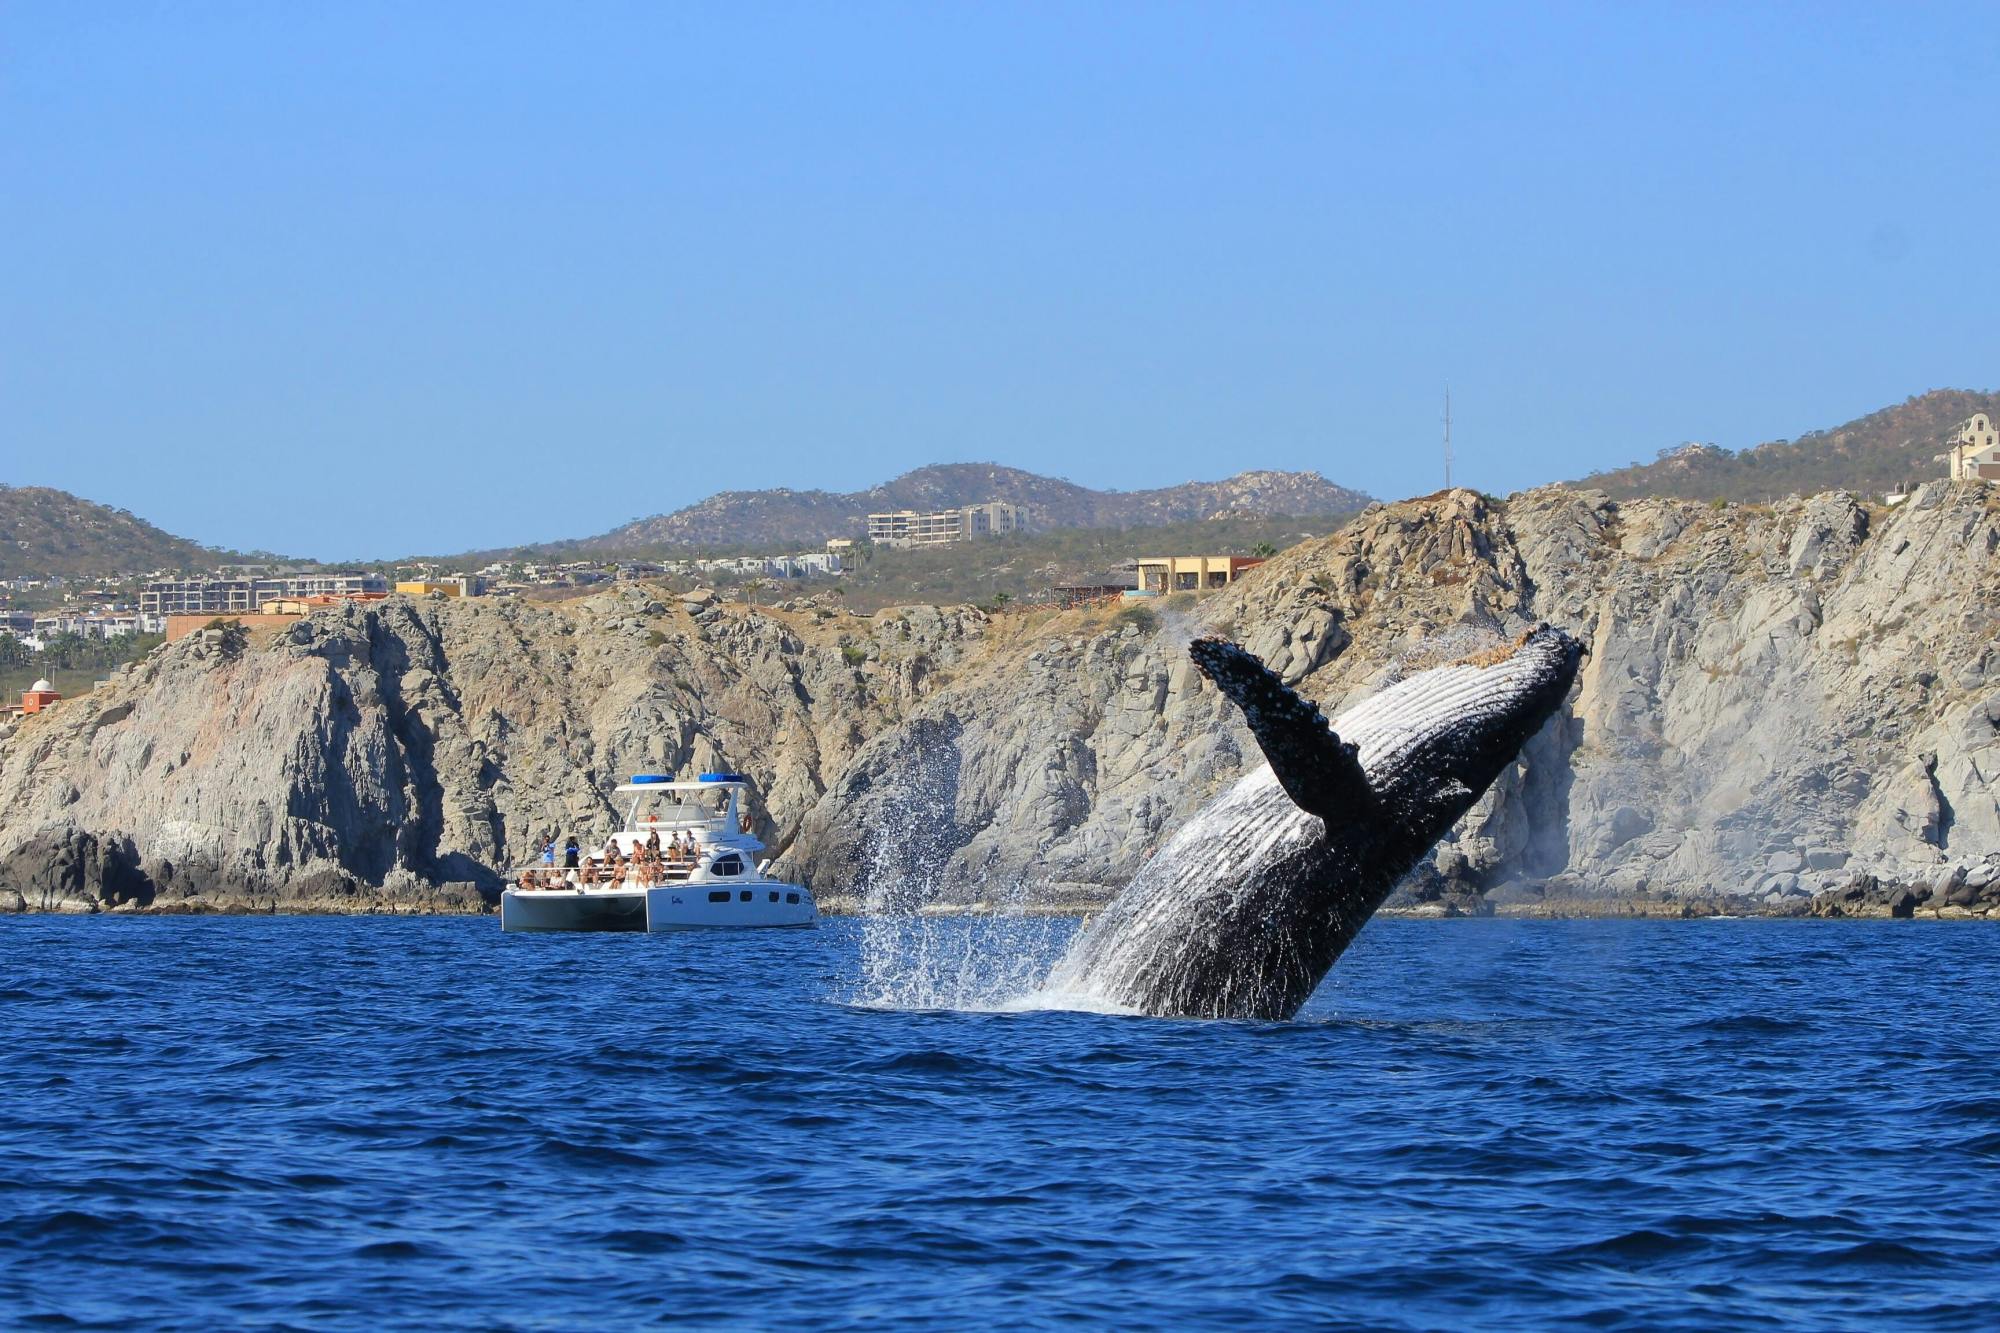 Luxury Catamaran Whale Watching